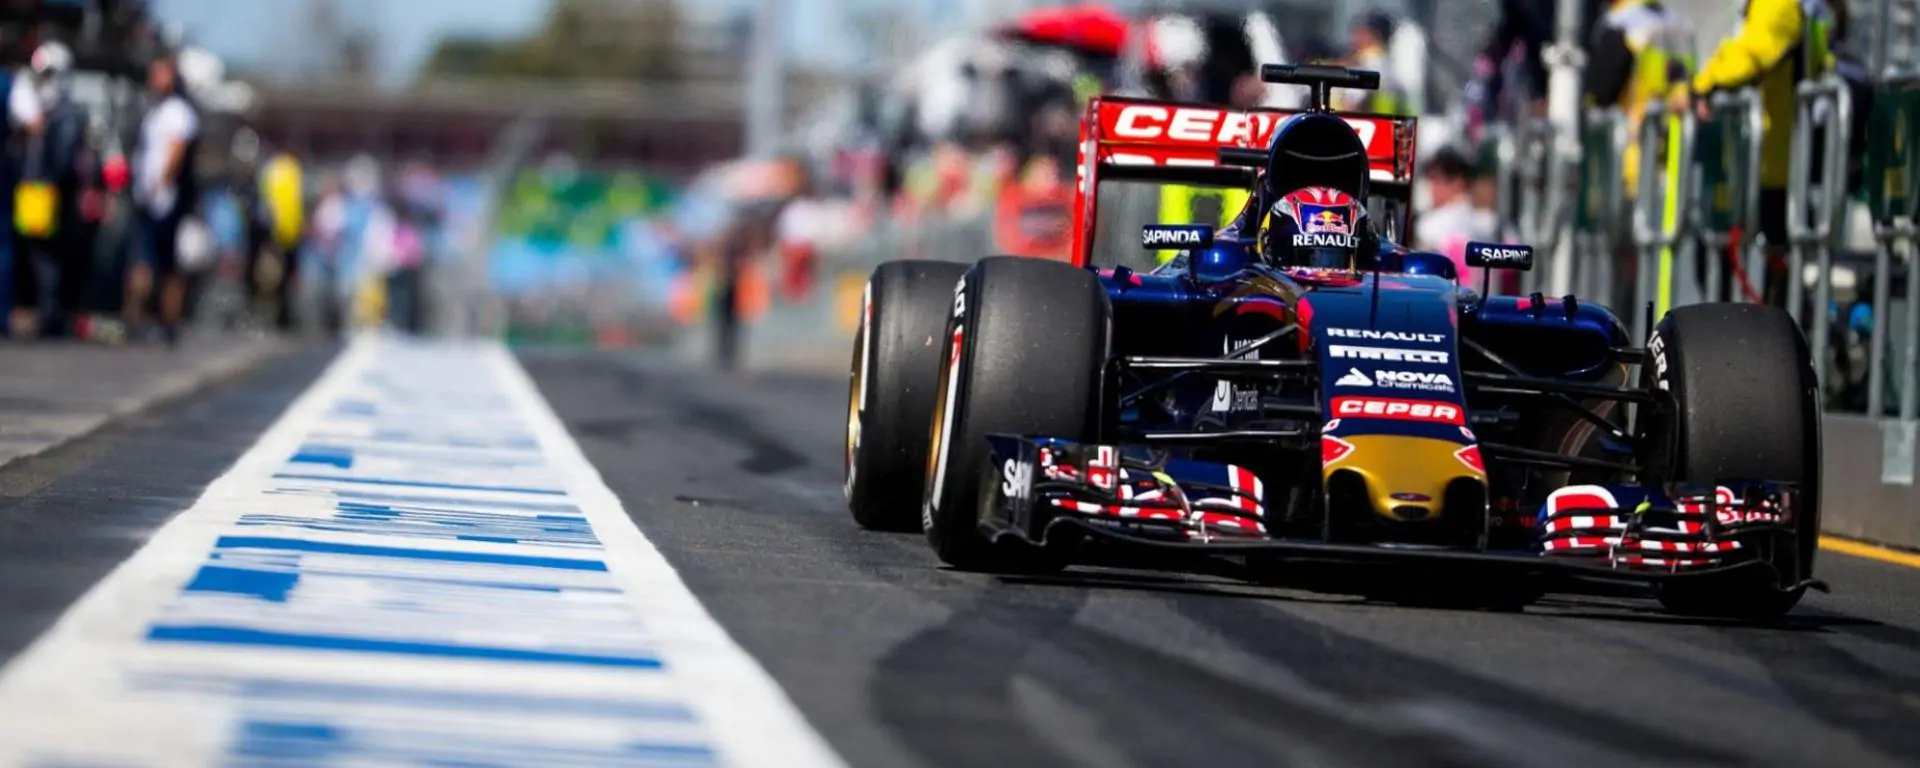 Formula 1, Gran Premio d'Australia: Hamilton in pole davanti a Vettel ma il distacco è minimo